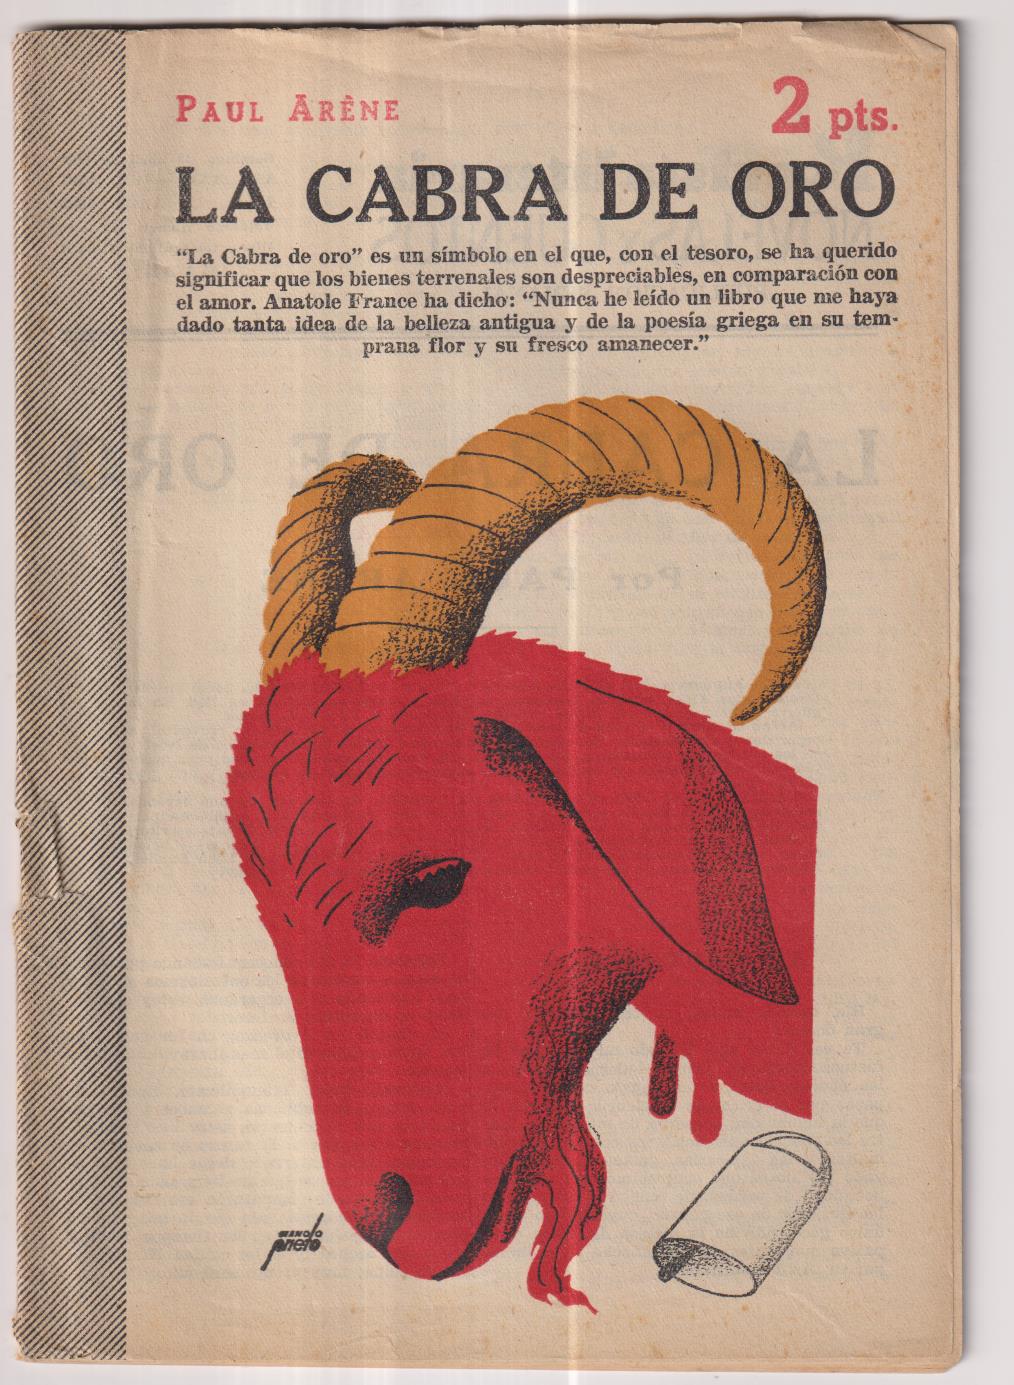 Revista literaria Novelas y Cuentos nº 1092. Paul arene. La Cabra de Oro, año 1952